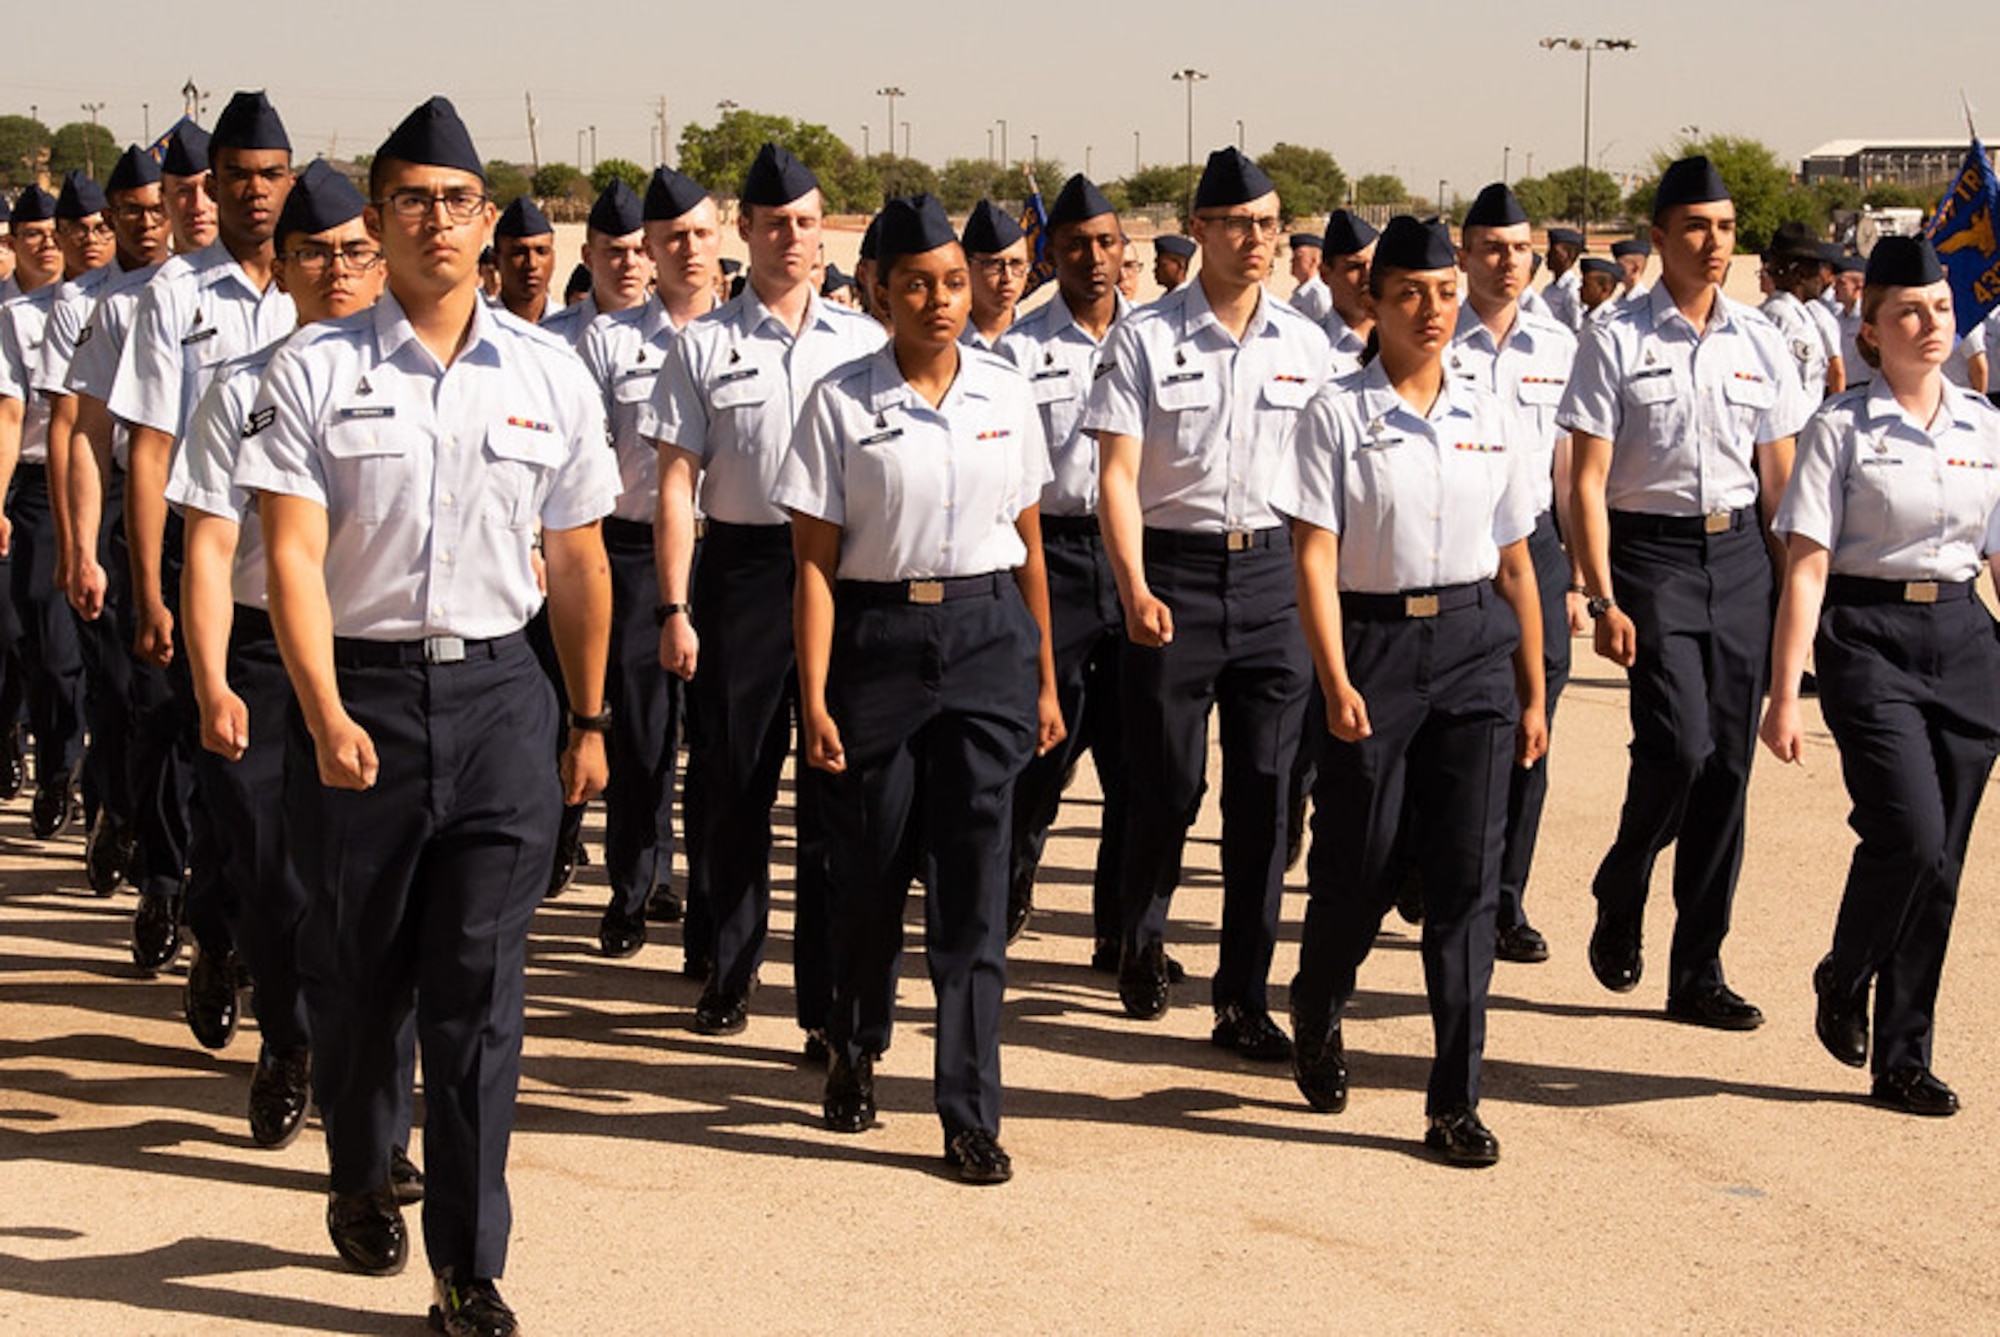 Airmen march at BMT graduation at JBSA-Lackland, Texas.